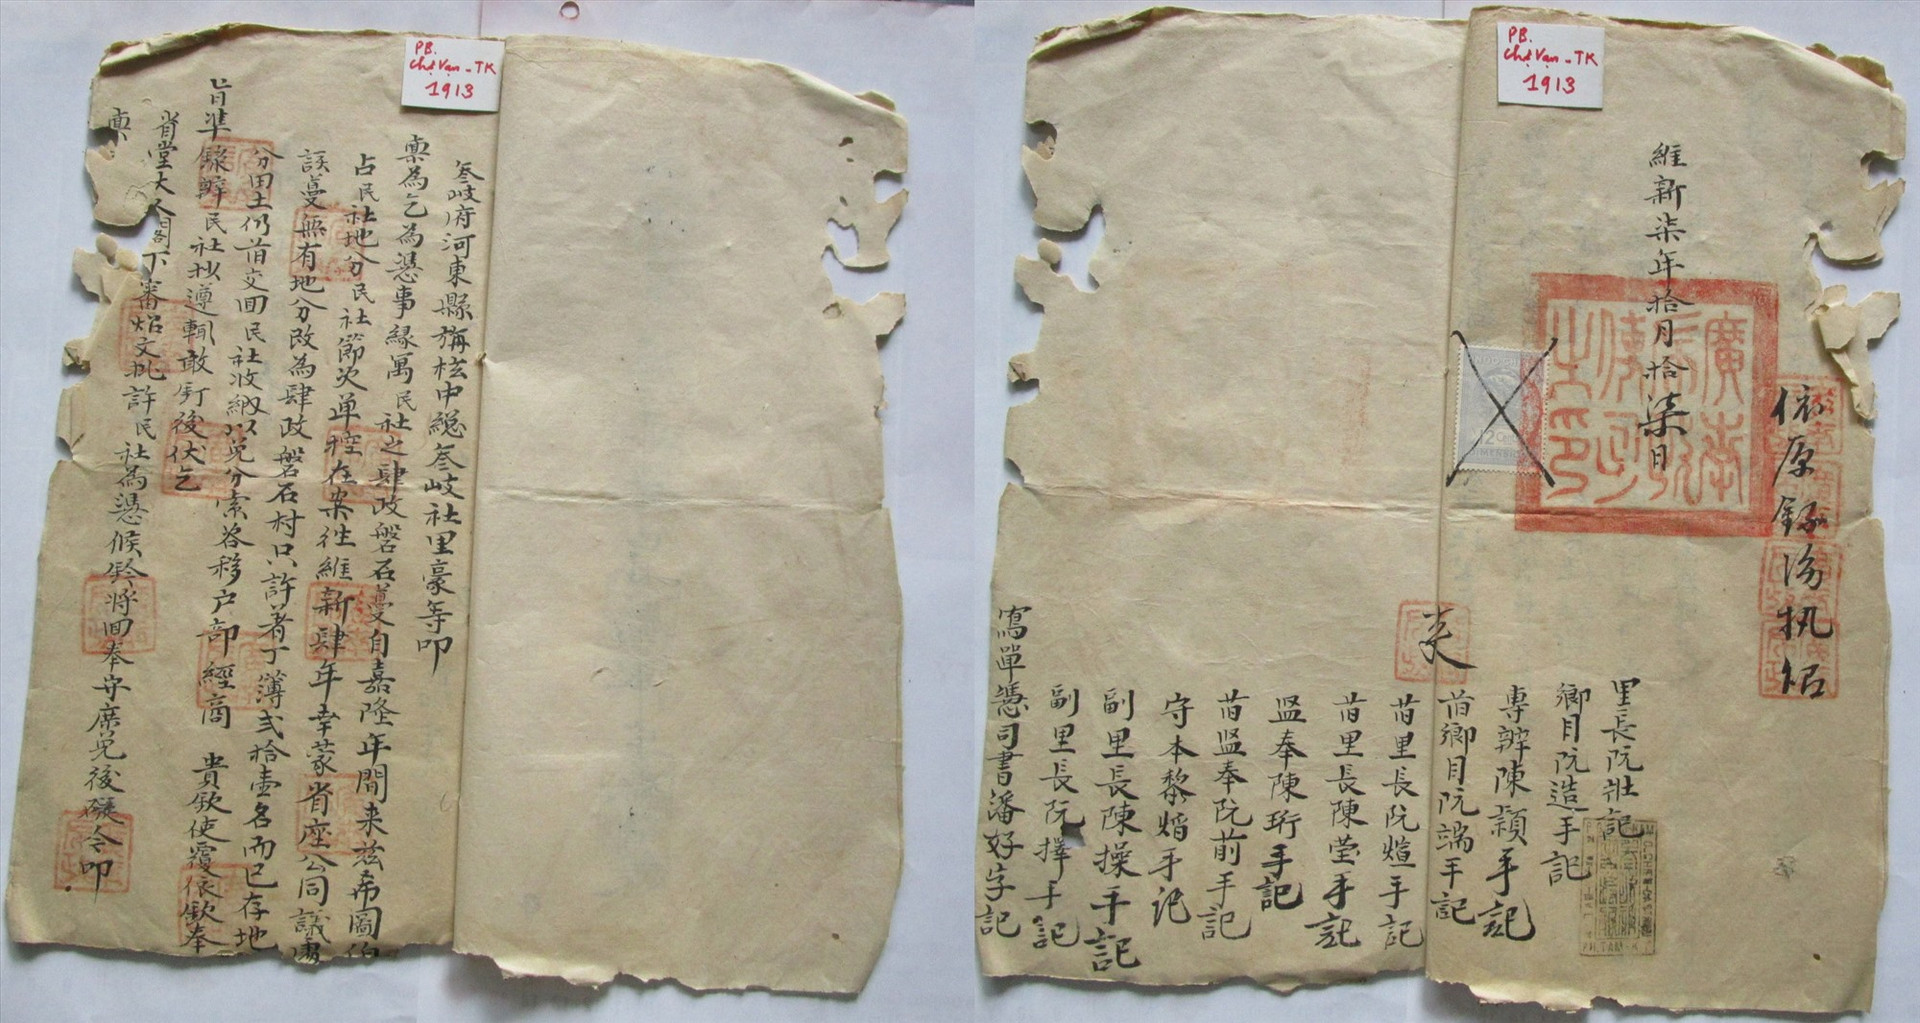 Mặt A và B tờ đơn năm 1913 của dân xã Tam Kỳ khiếu nại dân thôn Tứ Bàn có đóng dấu triện của Ty Bố chính sứ tỉnh Quảng Nam. Ảnh: PHÚ BÌNH